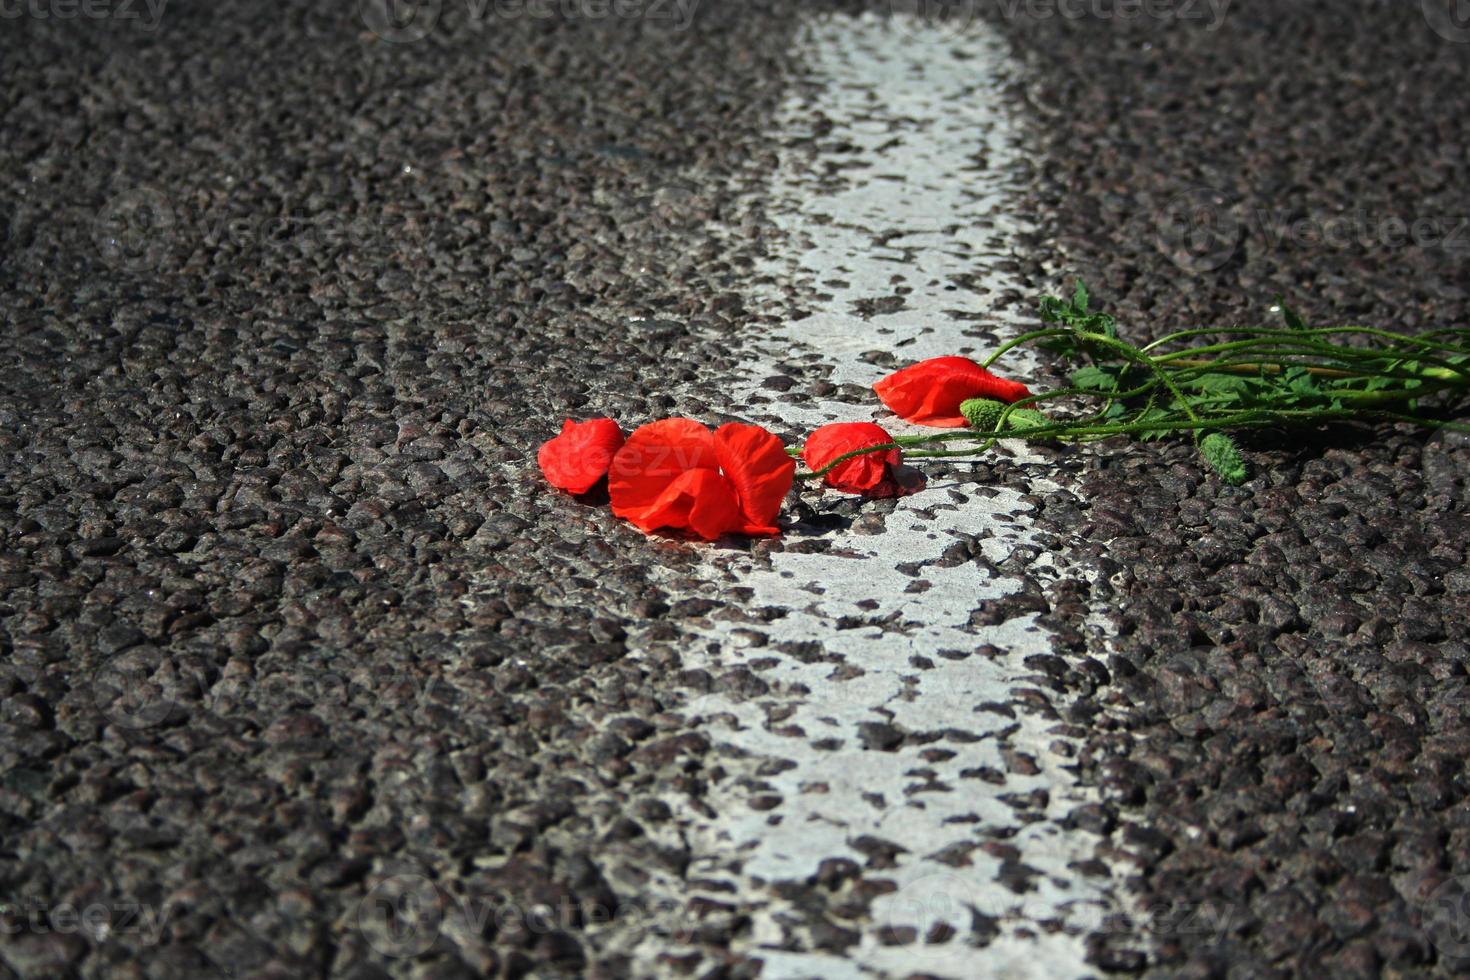 rode papaver liggend op de weg. de bloem van rode papaver liggend op de asfaltweg close-up. selectieve aandacht foto